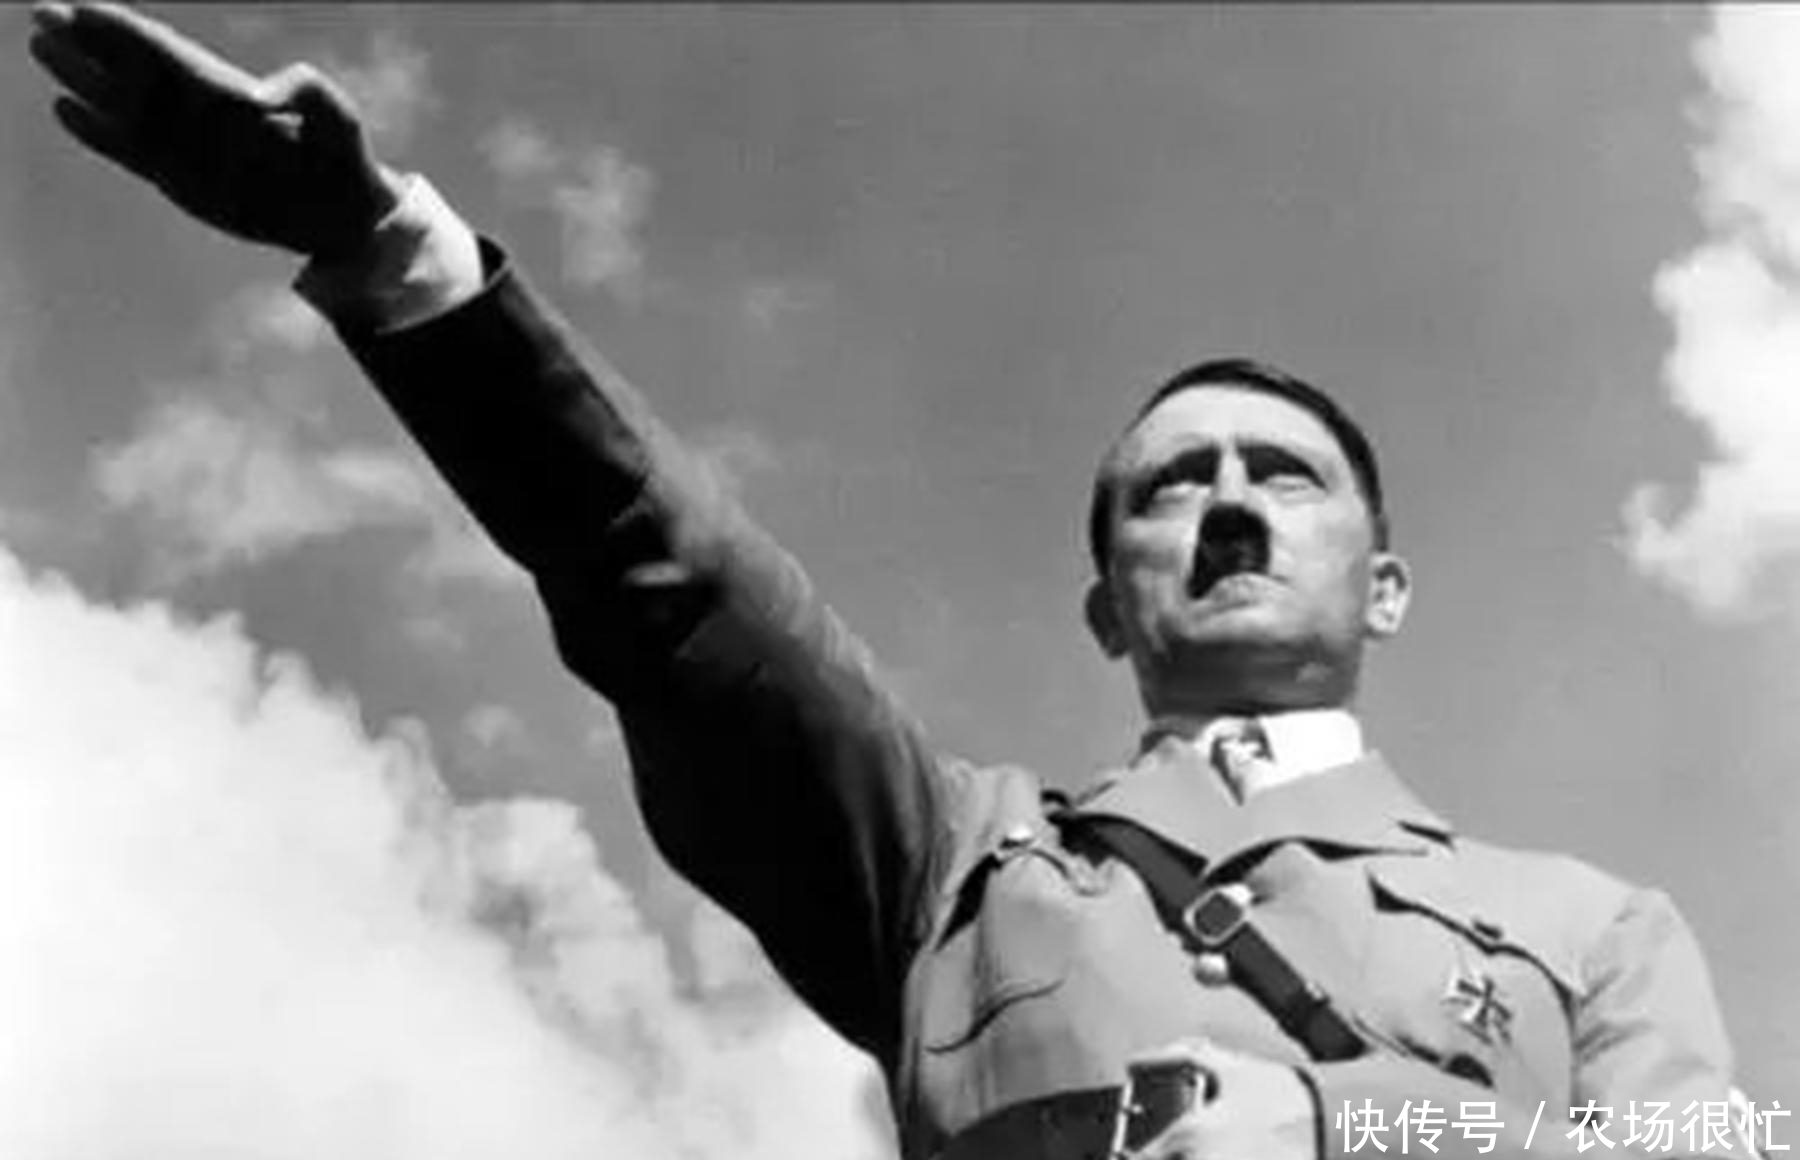 希特勒纳粹礼手势图片